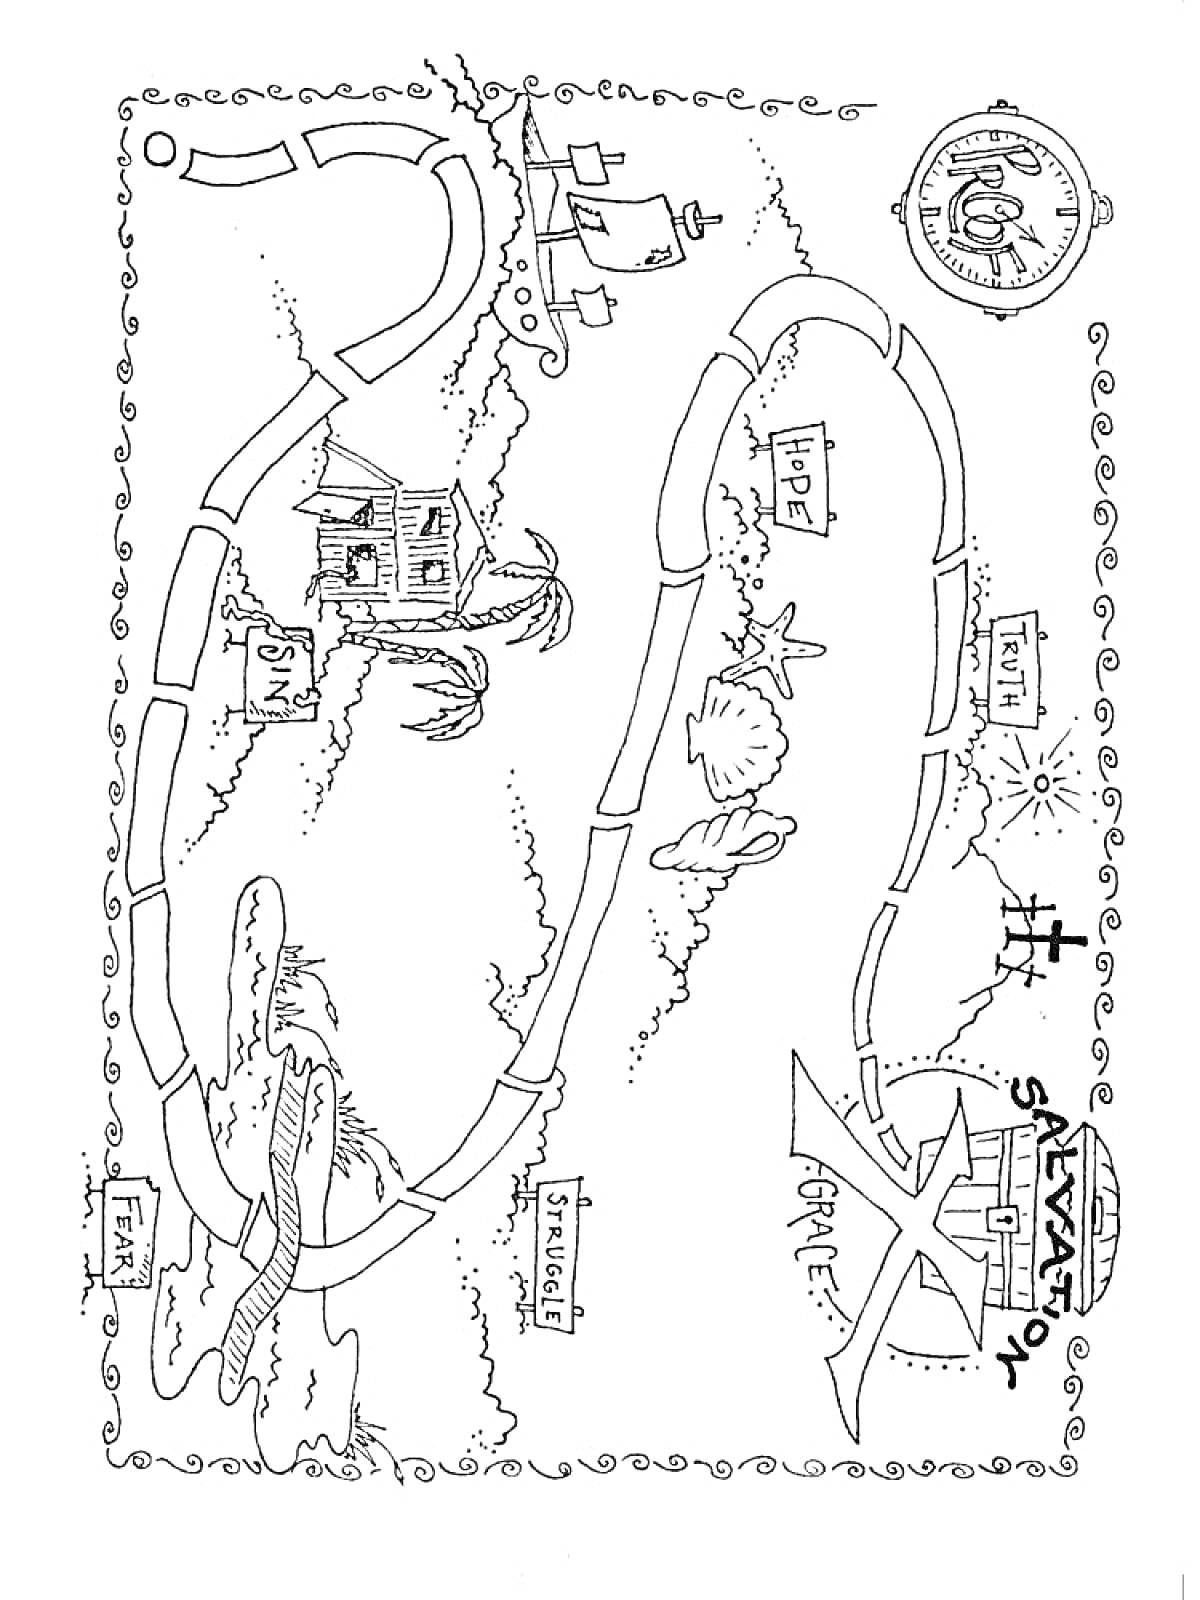 Раскраска Карта сокровищ с домом, пальмами, компасом, сундуком, кроликом, птицей, островом, пиратским кораблем, маяком